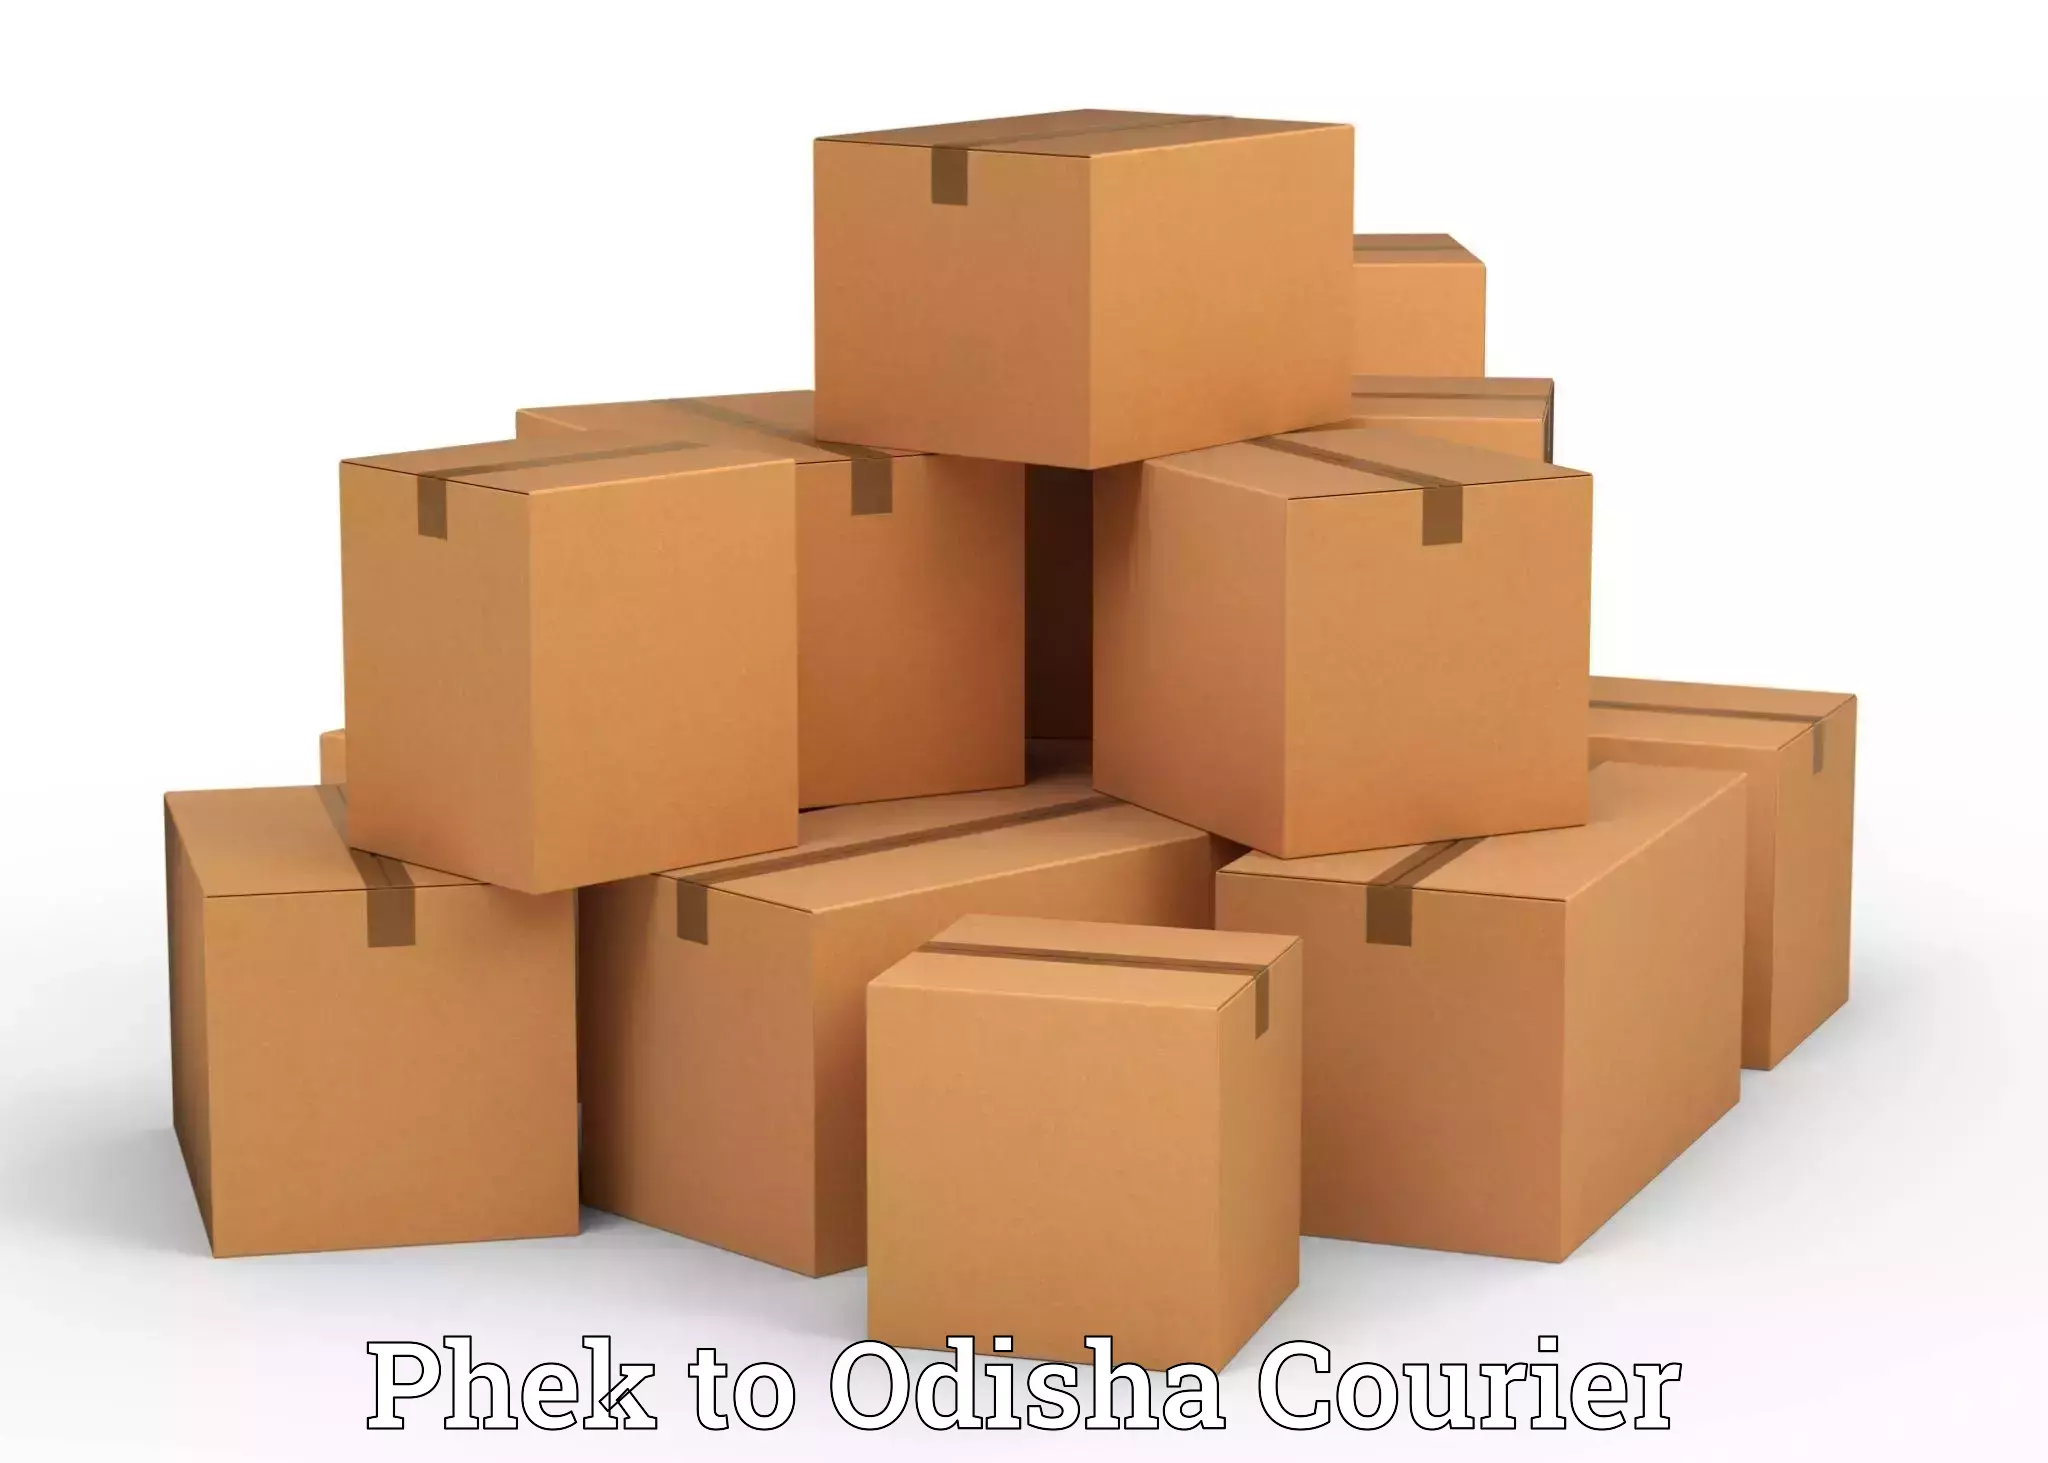 Home goods moving company Phek to Odisha